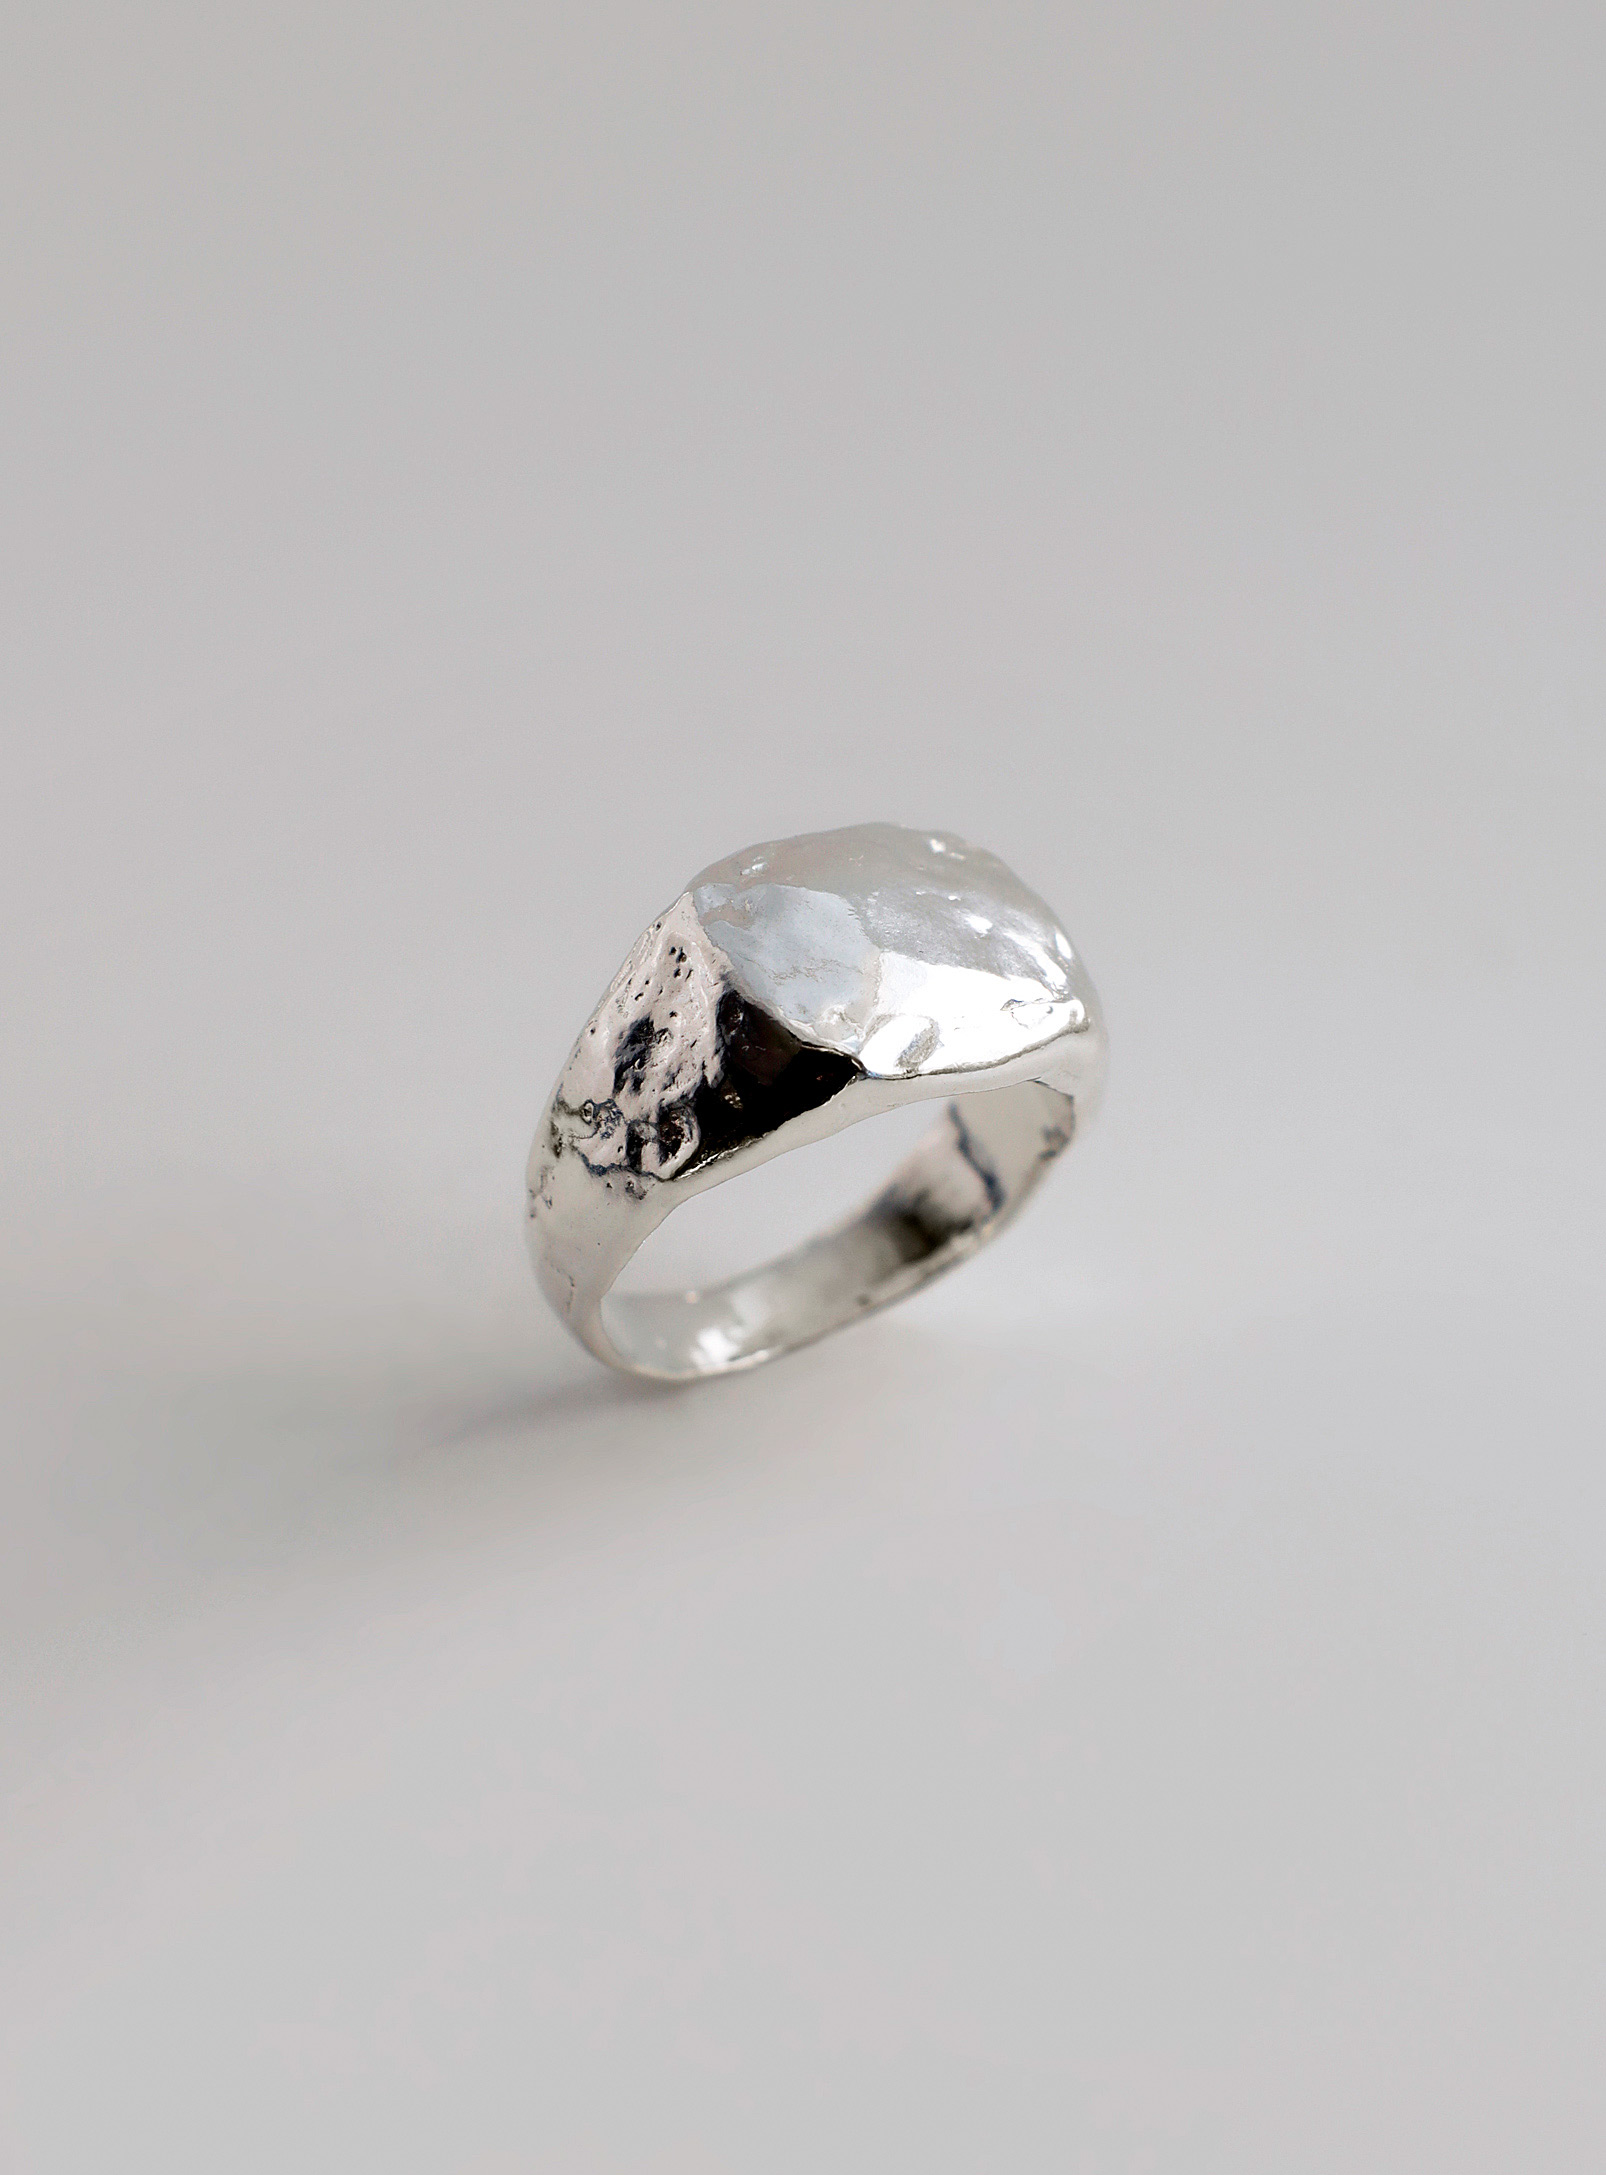 ORA-C - Boulder sterling silver signet ring